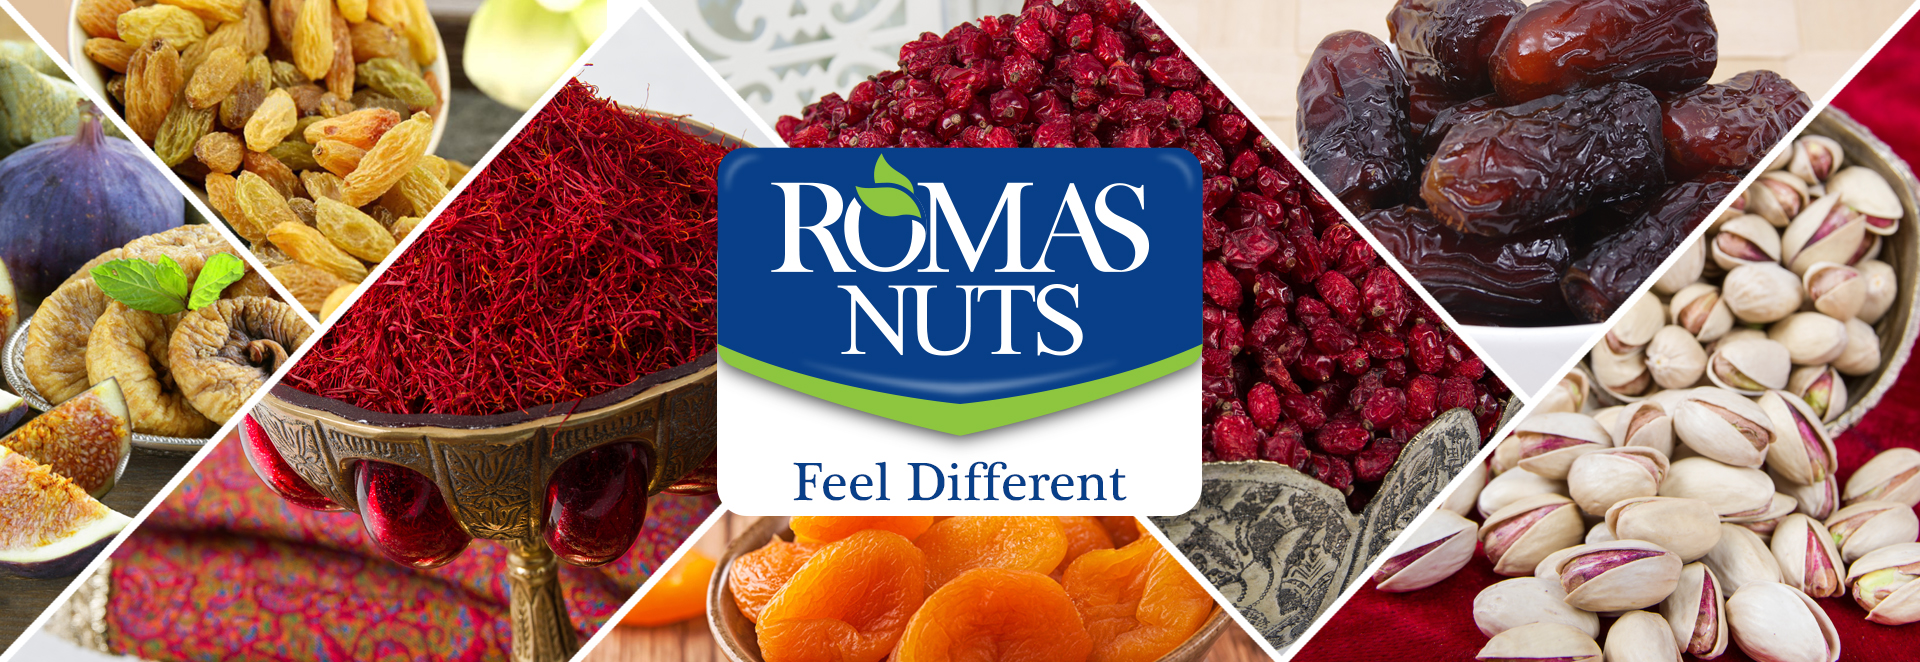 Romas Nuts